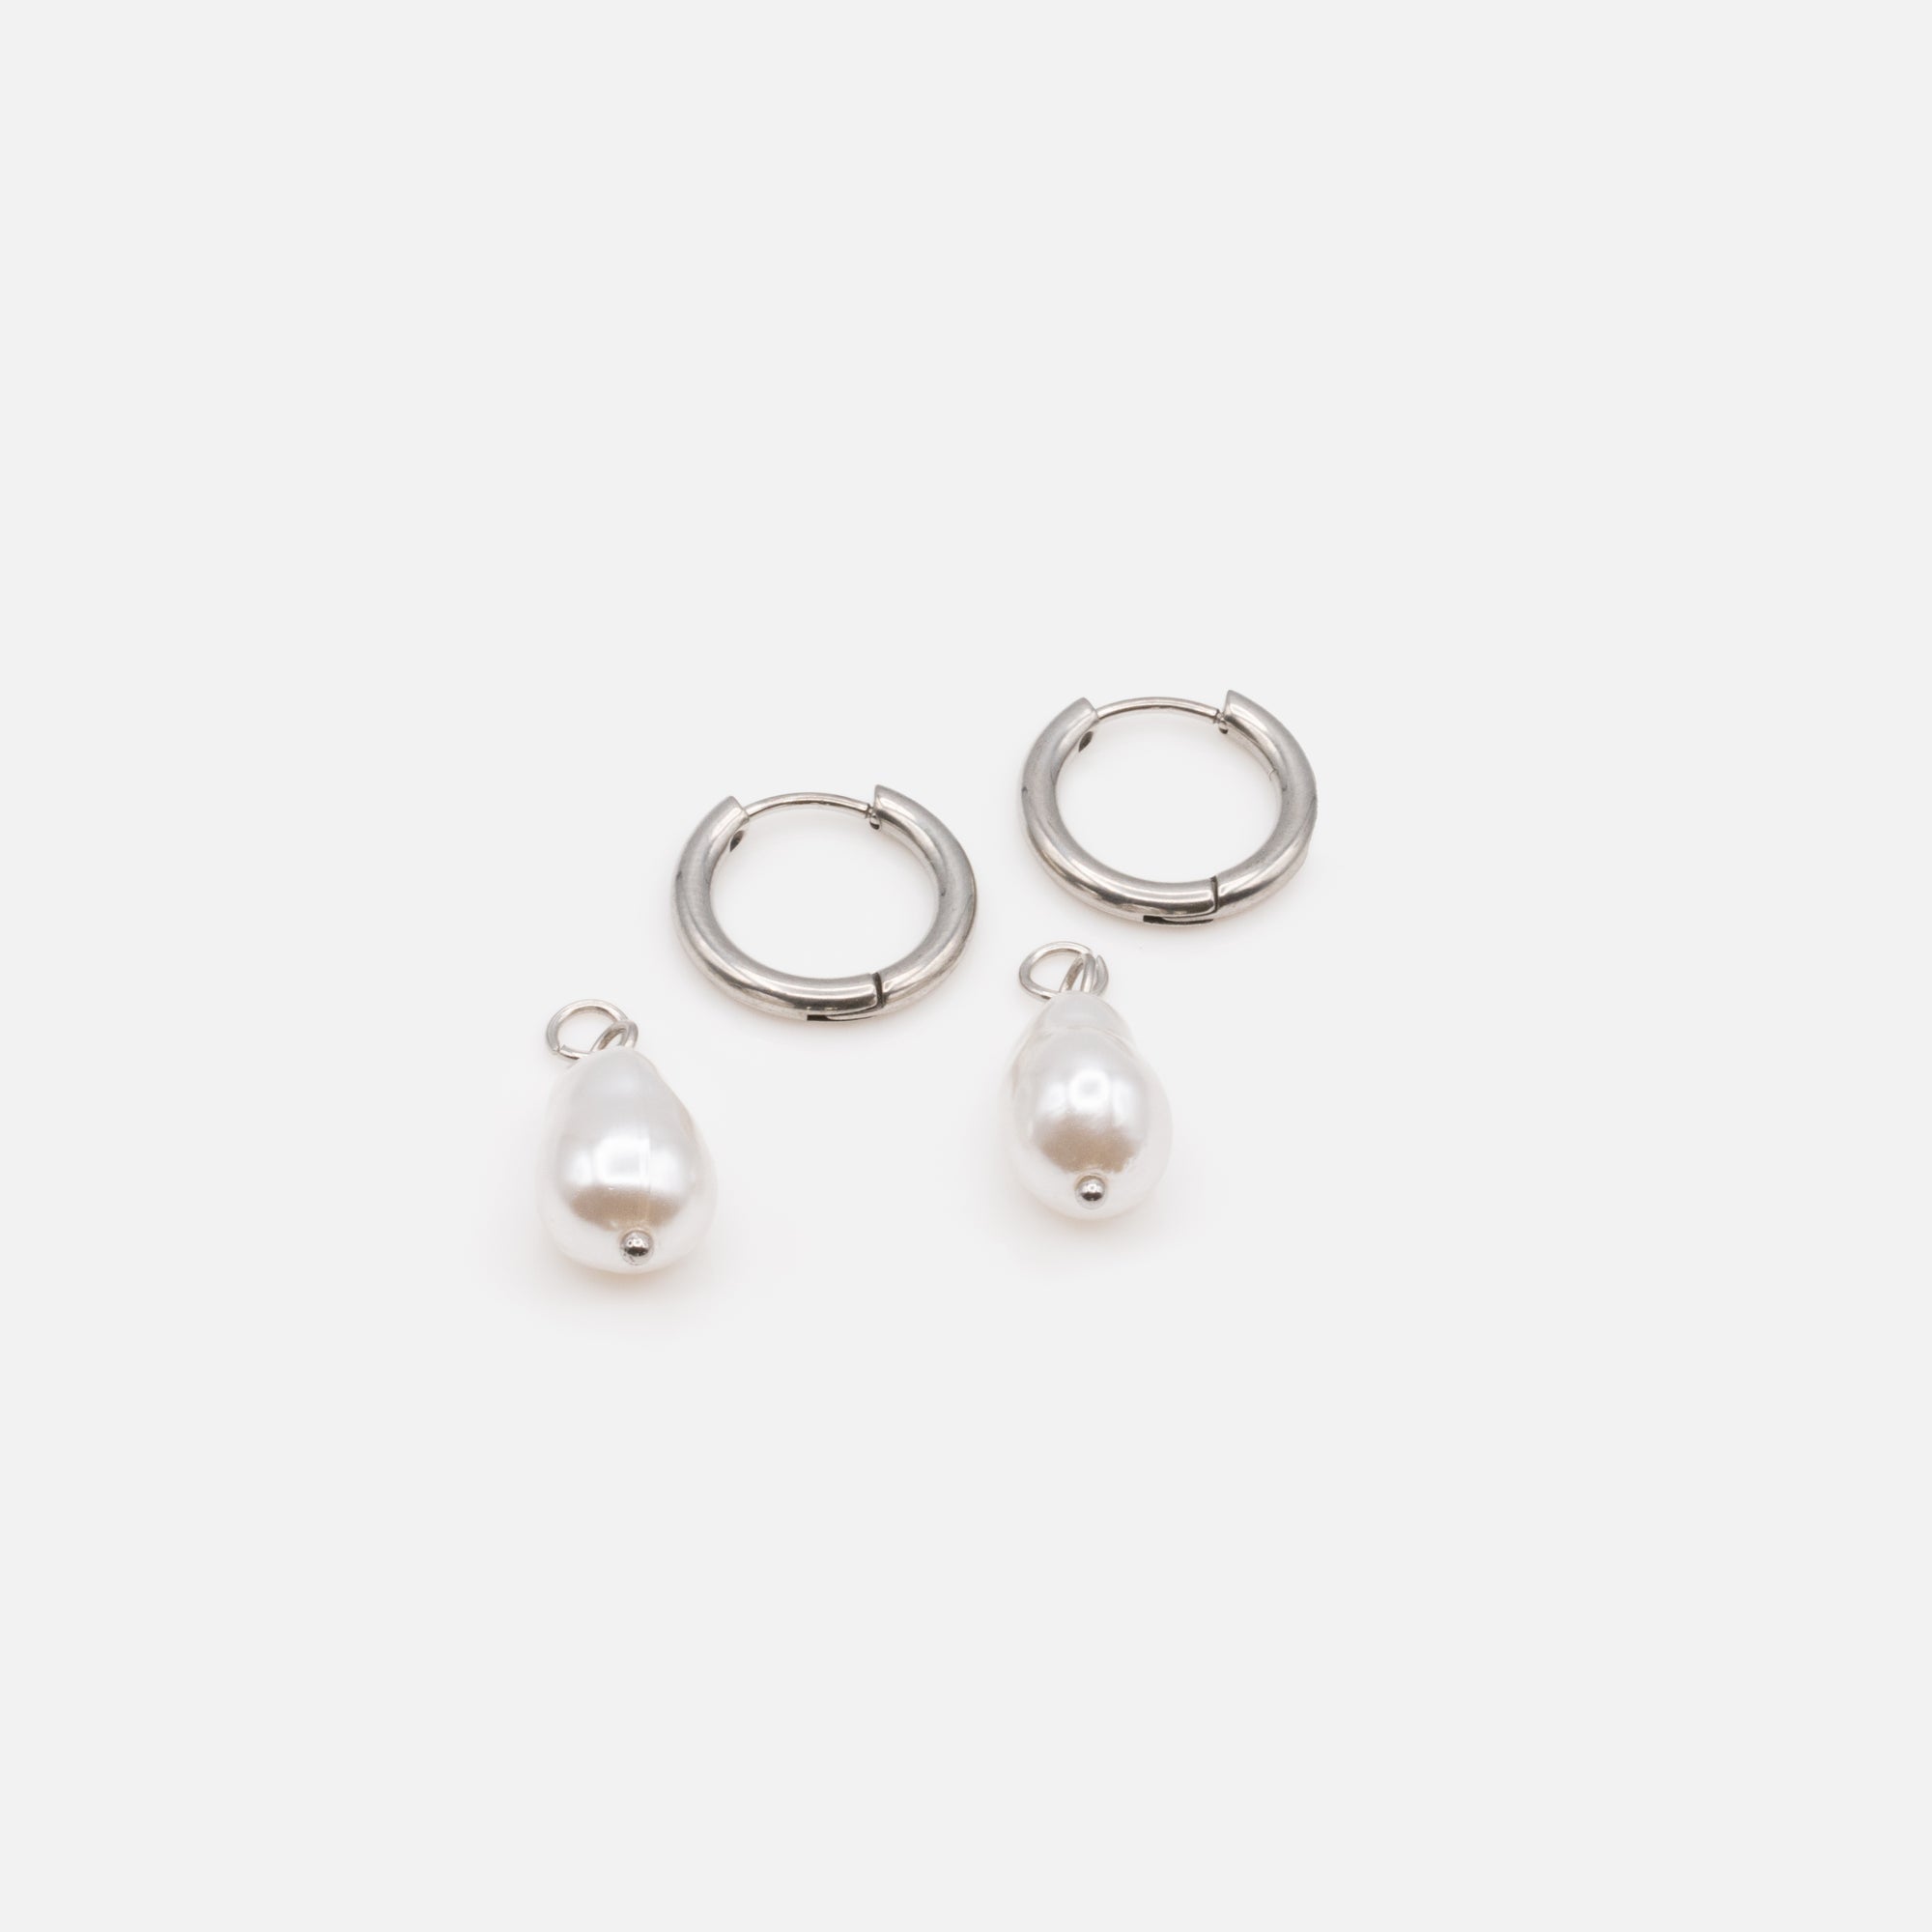 Boucles d'oreilles anneaux argent sterling avec zircons (30 mm) – Bizou